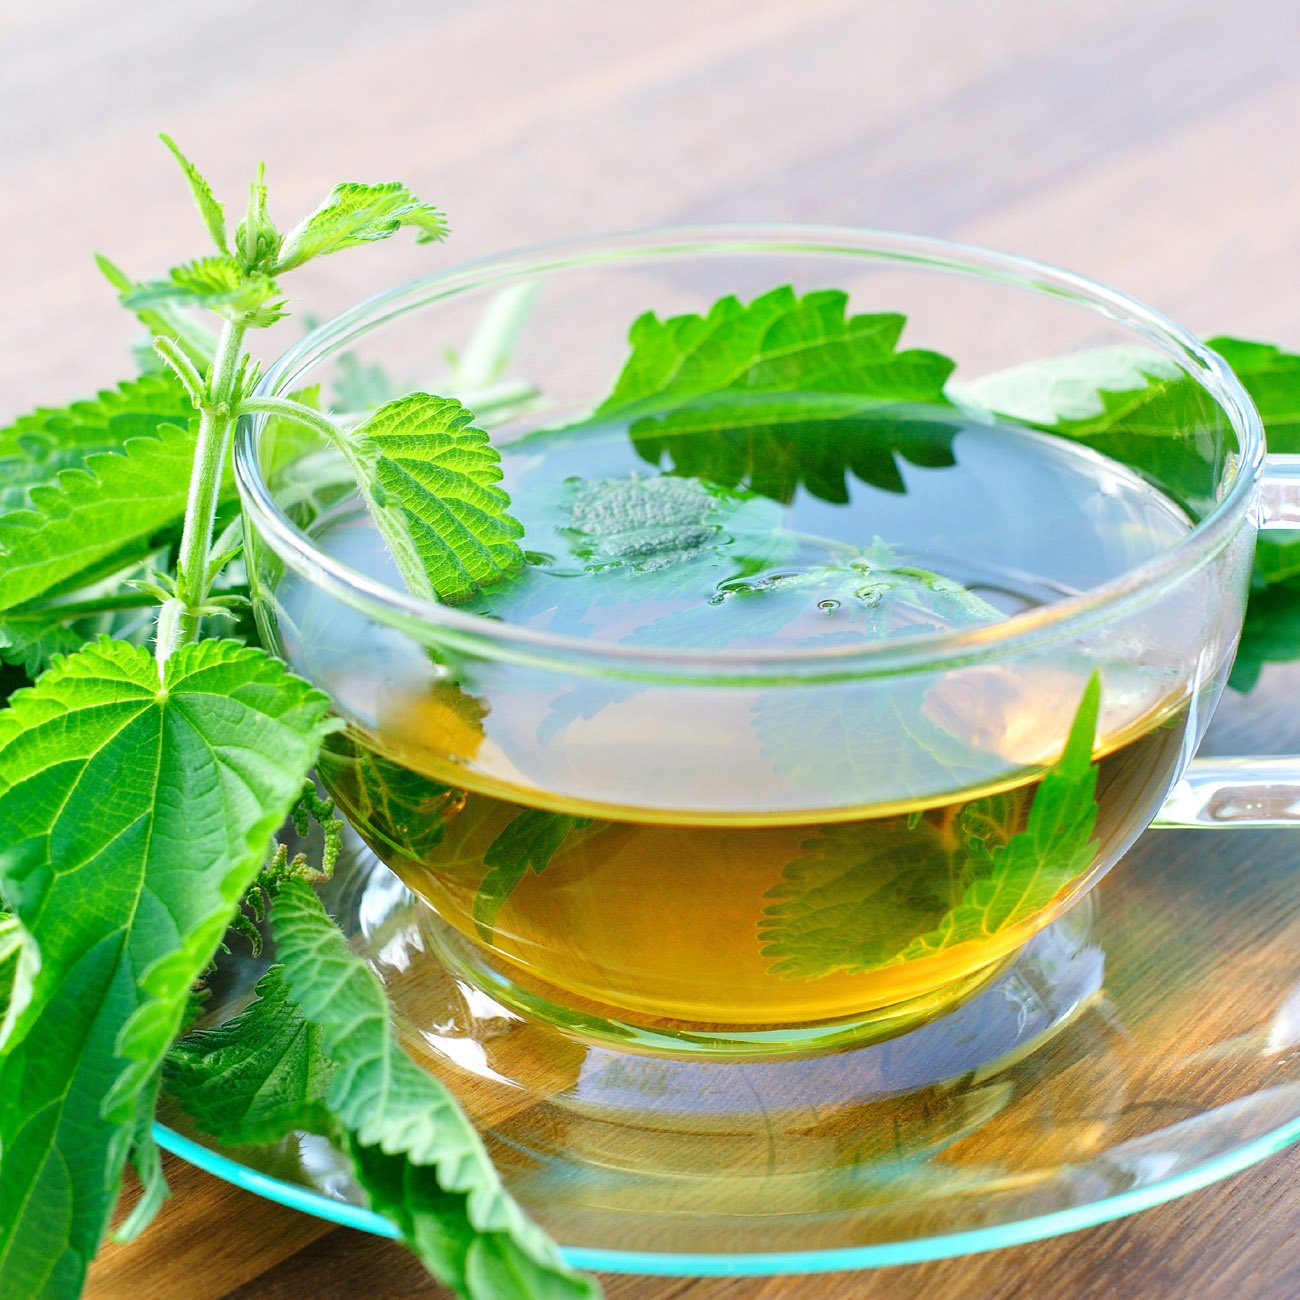 Buy Stinging Nettle Leaf Tea: benefits, How to Make, Side ...